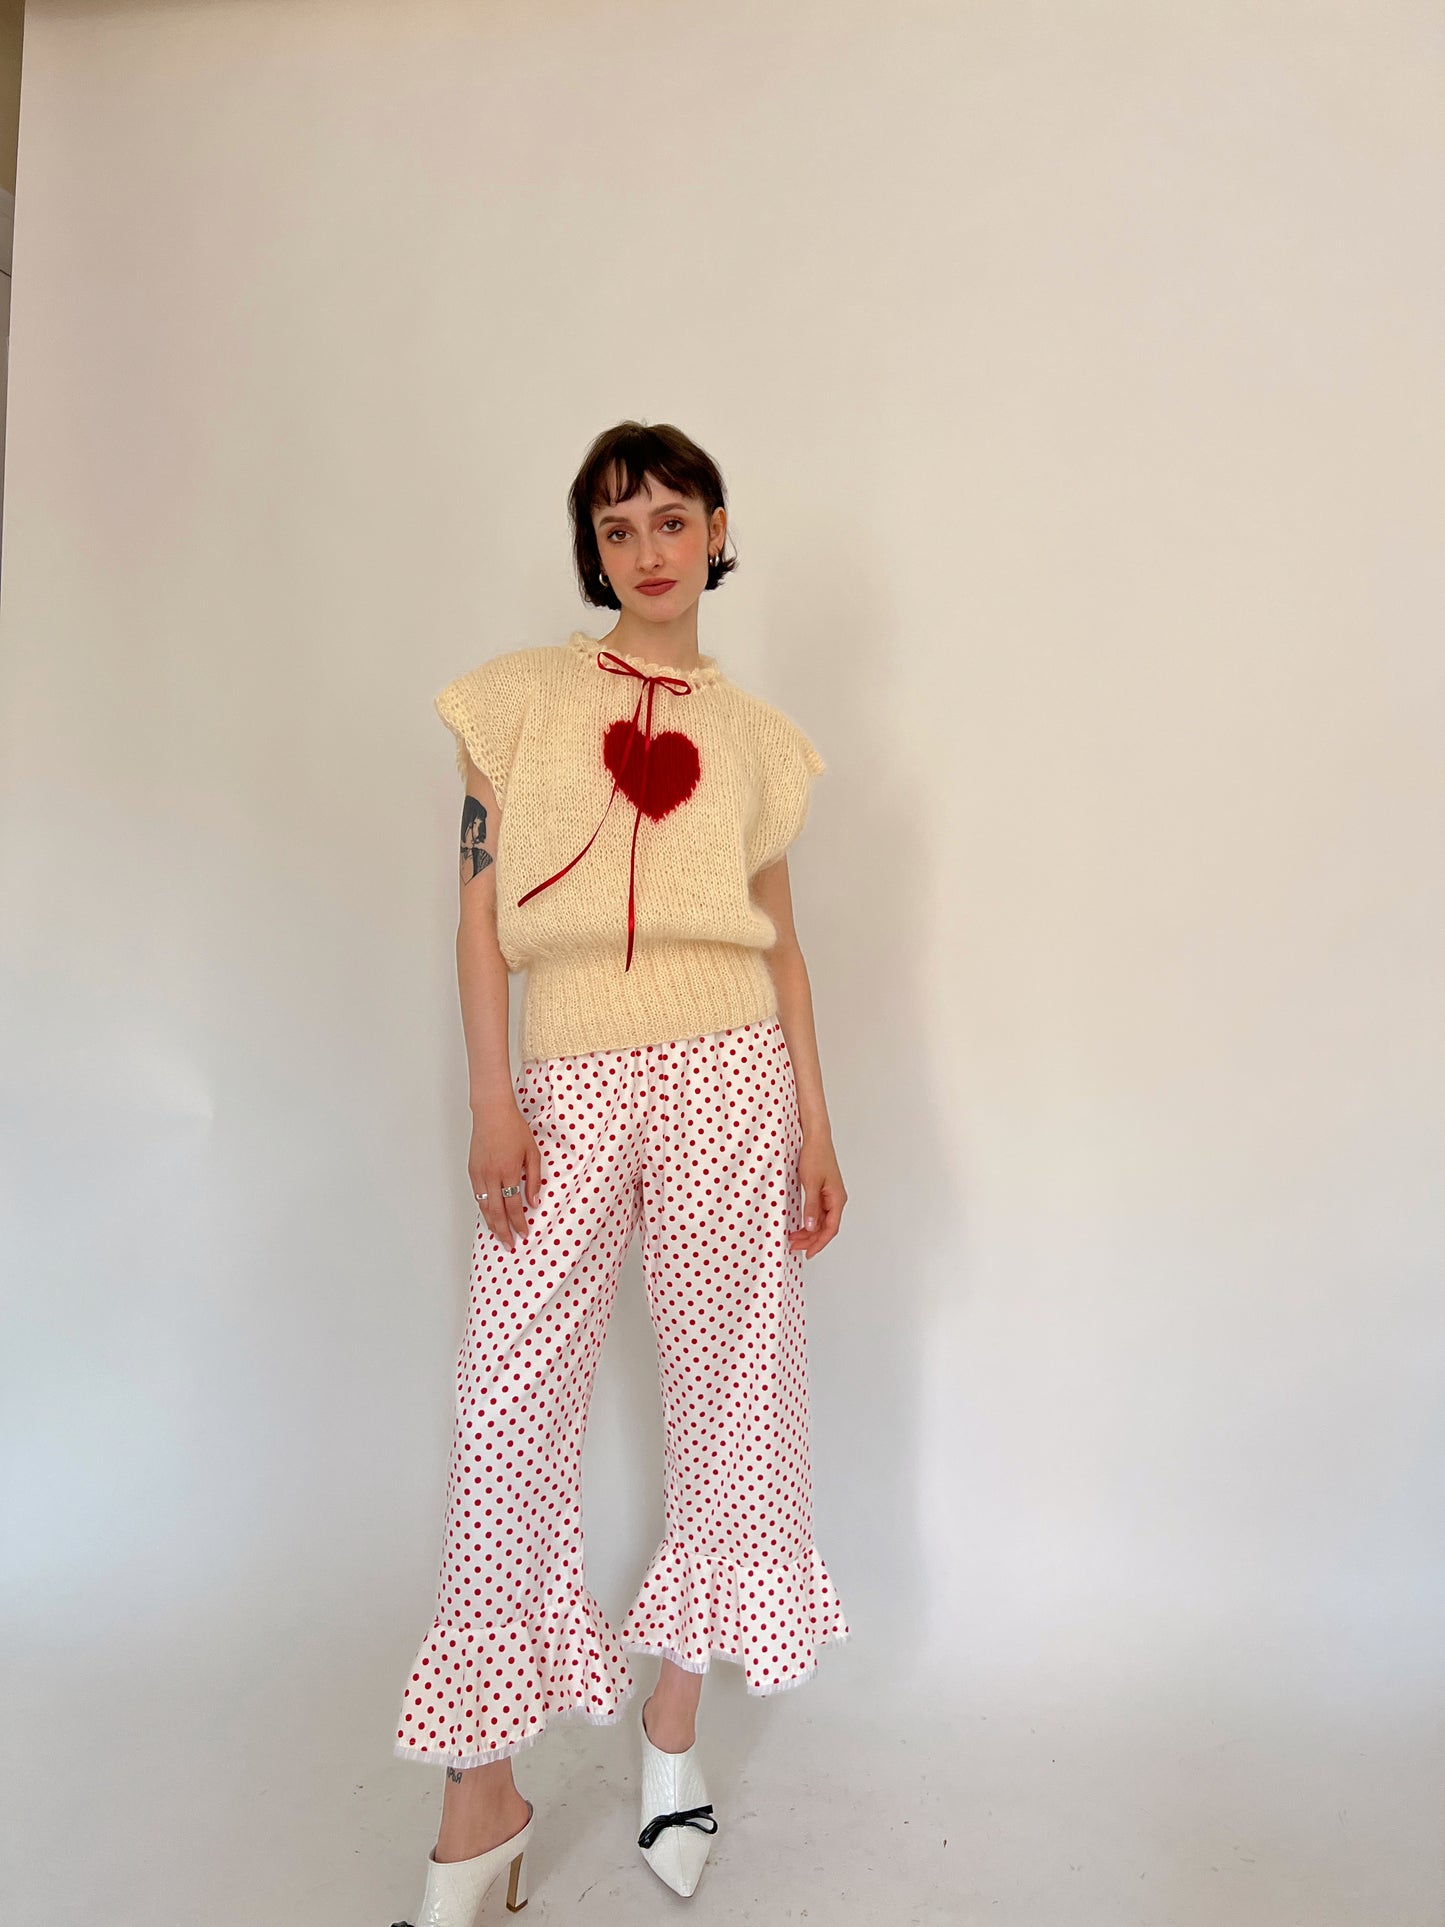 Heart mohair knit